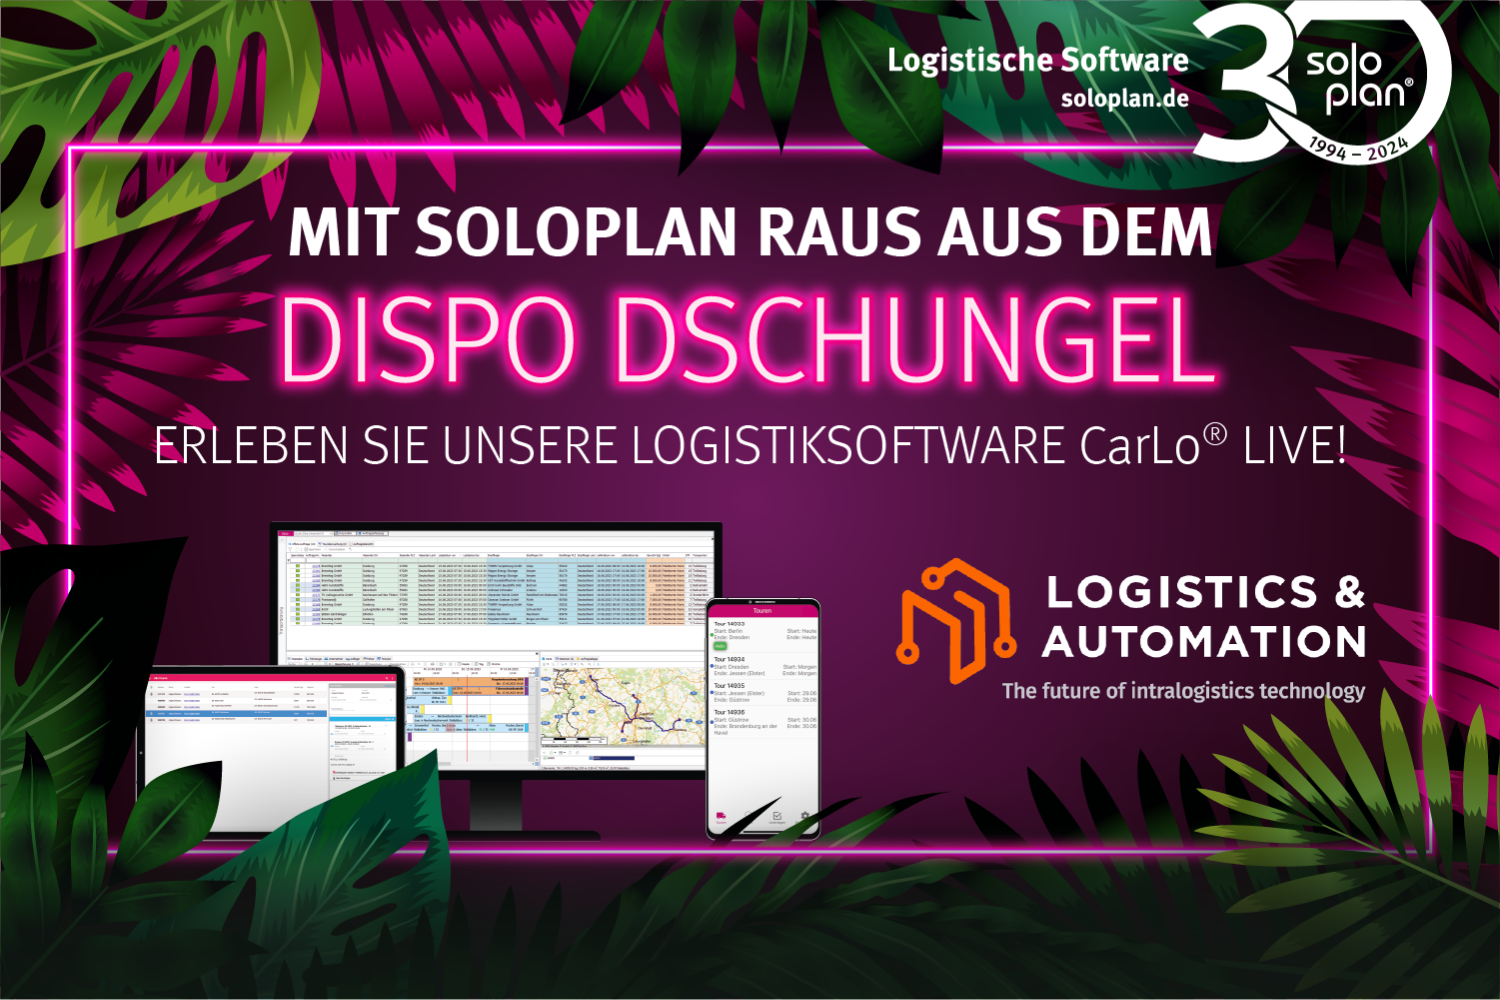 Soloplan auf der Logistics & Automation in Bern